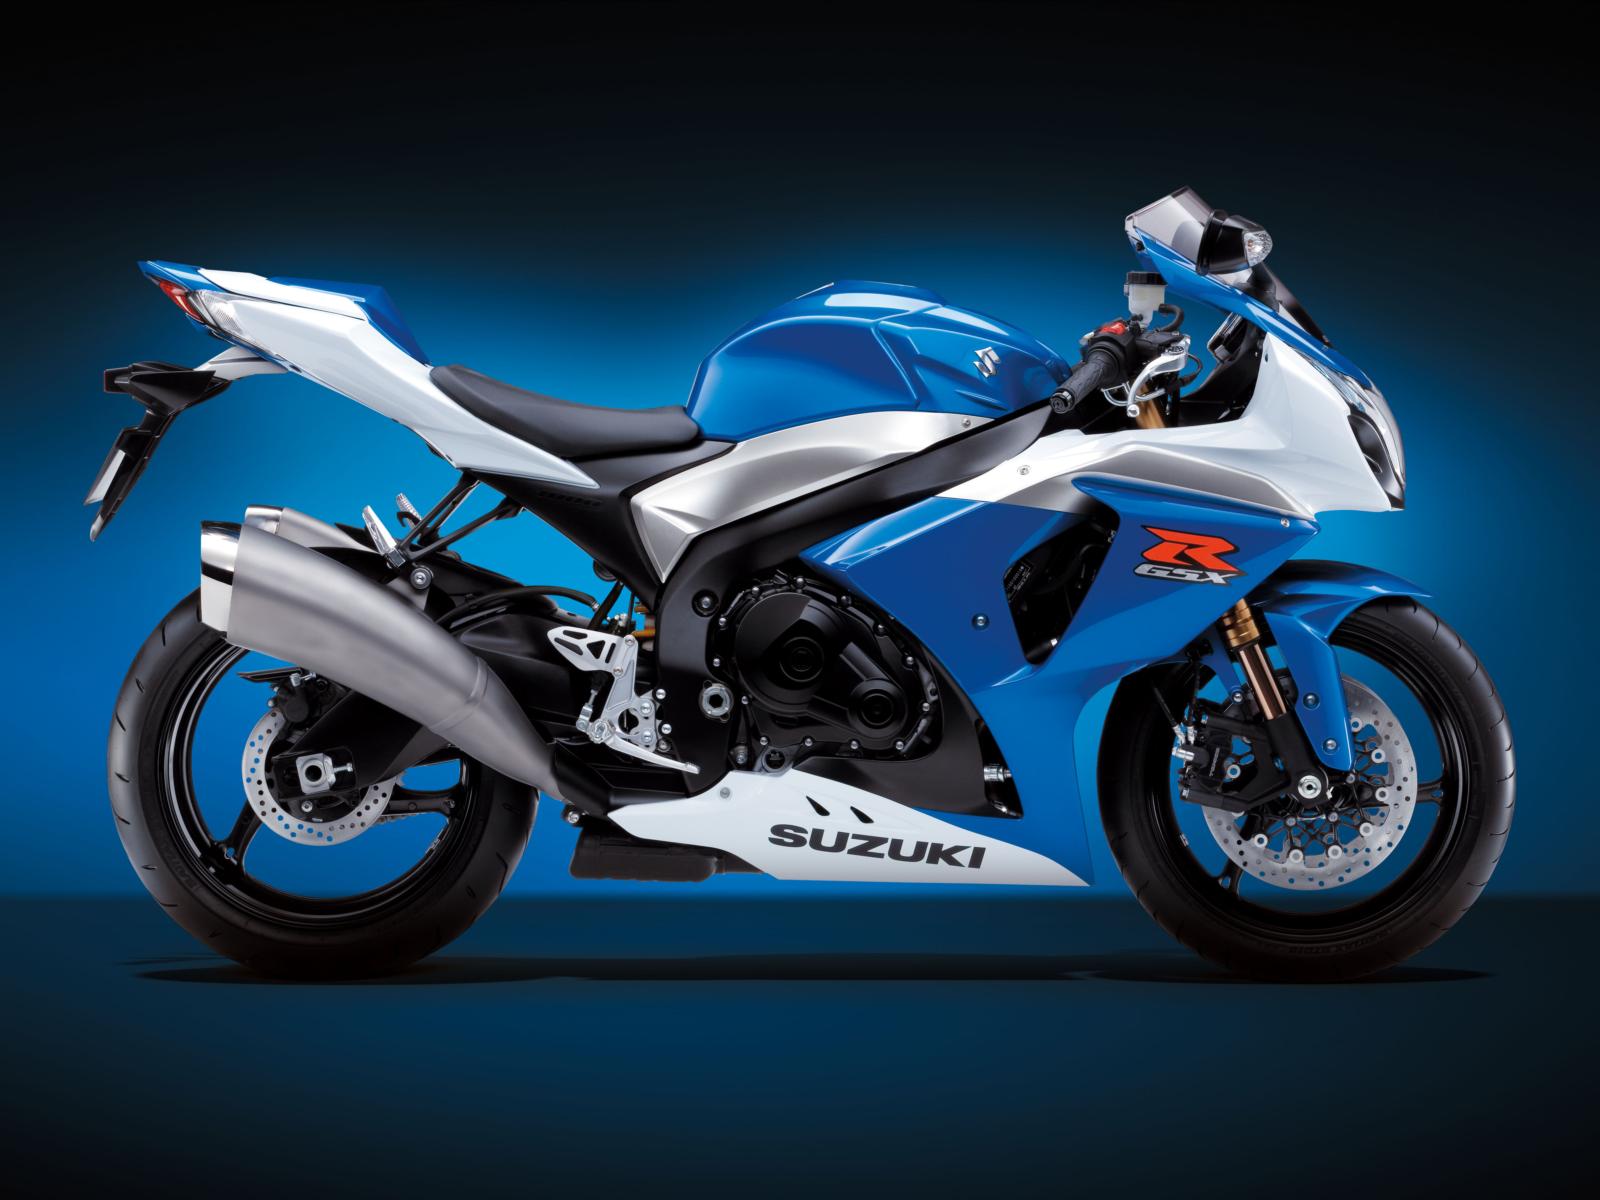 Download full size R GSX Suzuki Motorcycle wallpaper / 1600x1200